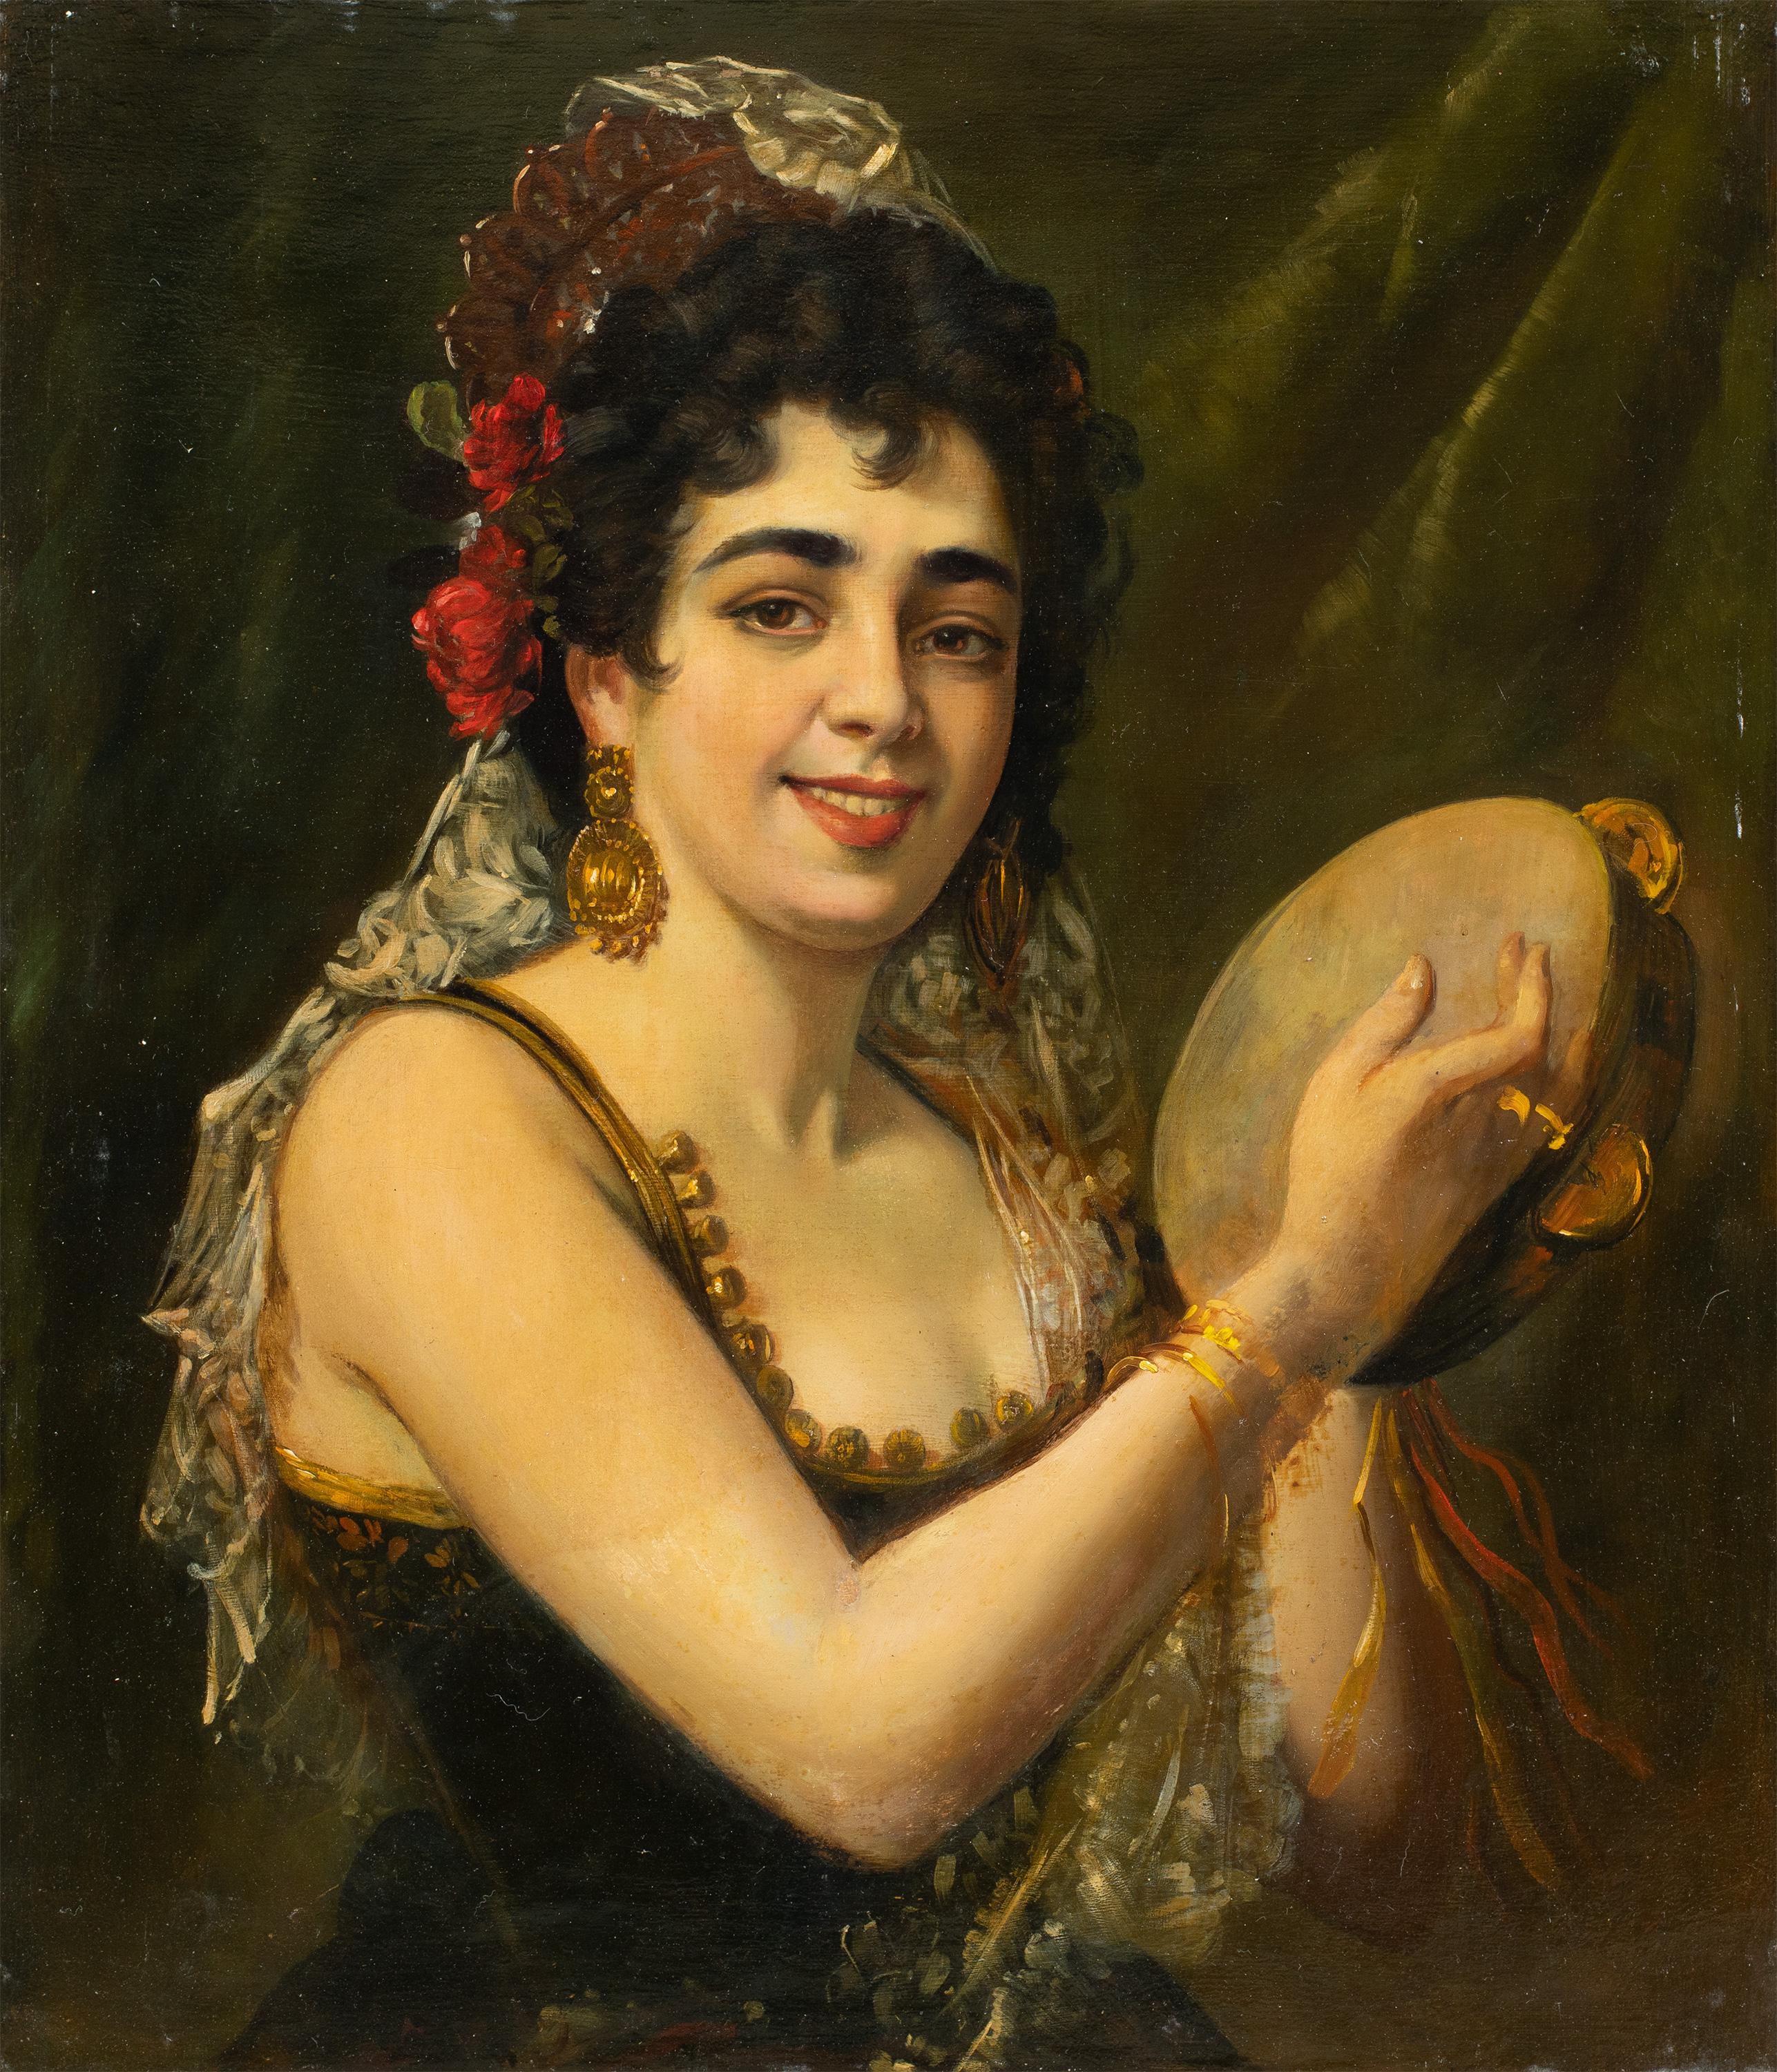 Unknown Figurative Painting – Italienischer realistischer Maler des späten 19. Jahrhunderts – Figurenmalerei mit tanzender Dame 